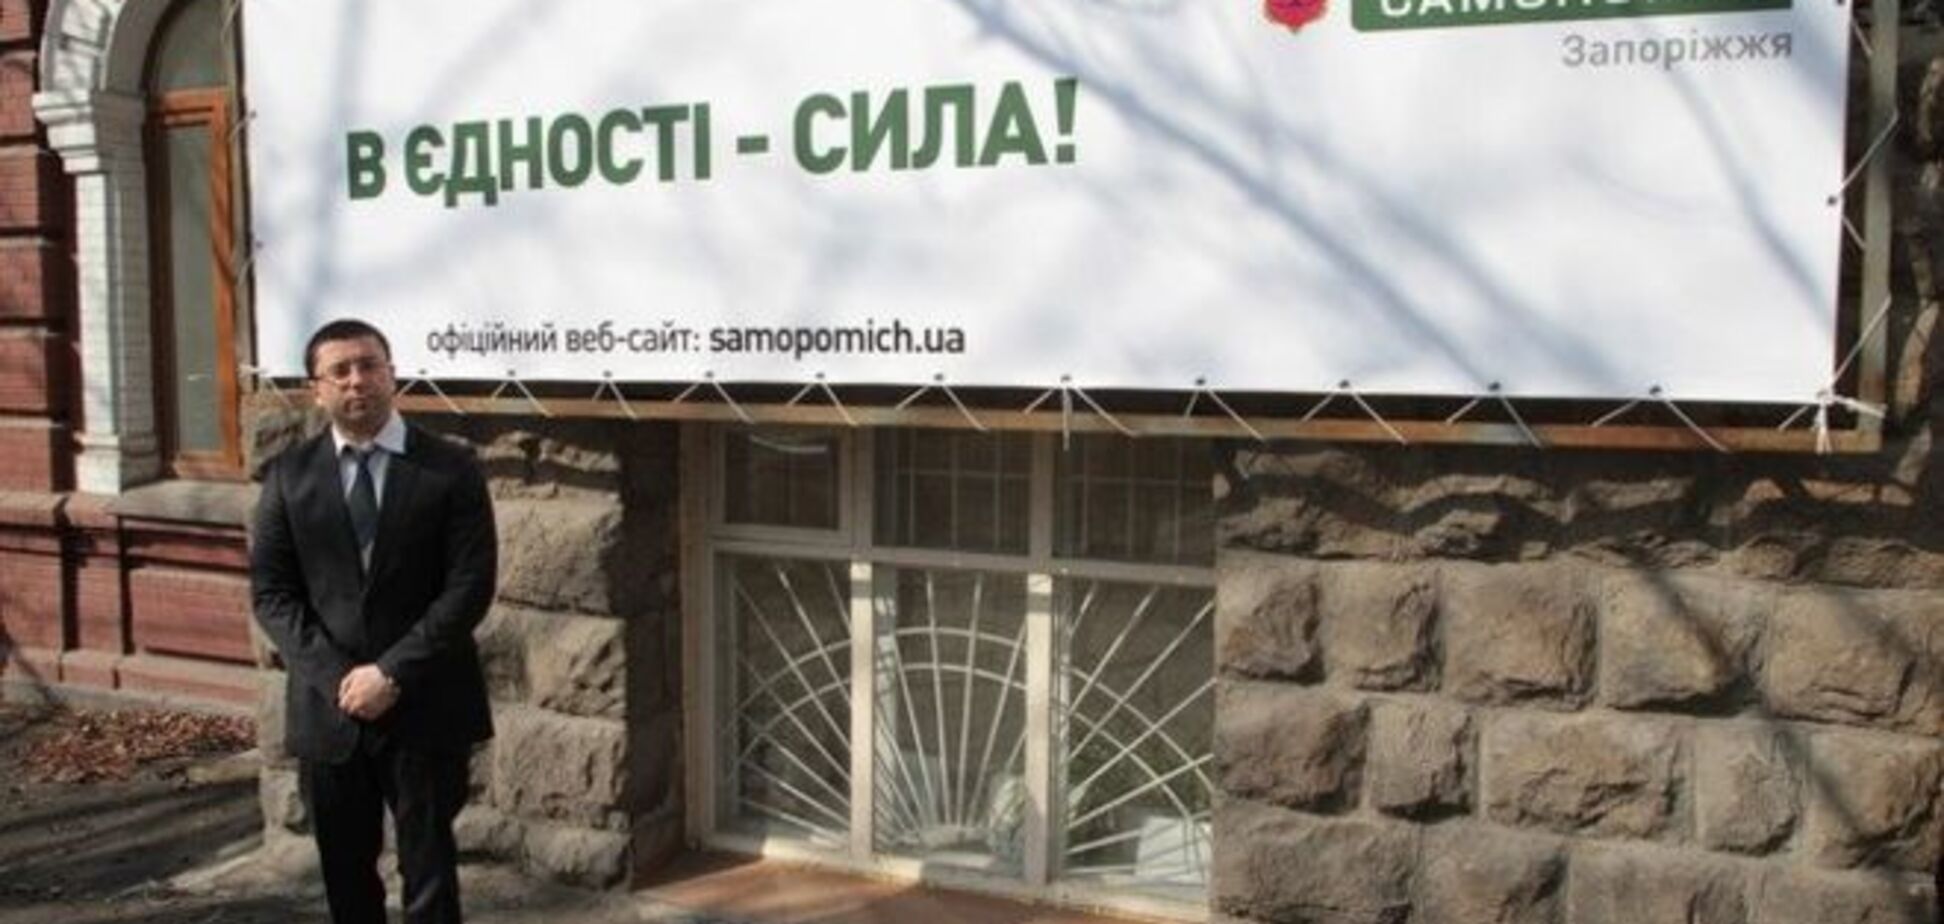 Скандал в 'Самопомочі': лидер запорожской организации заявил об уходе